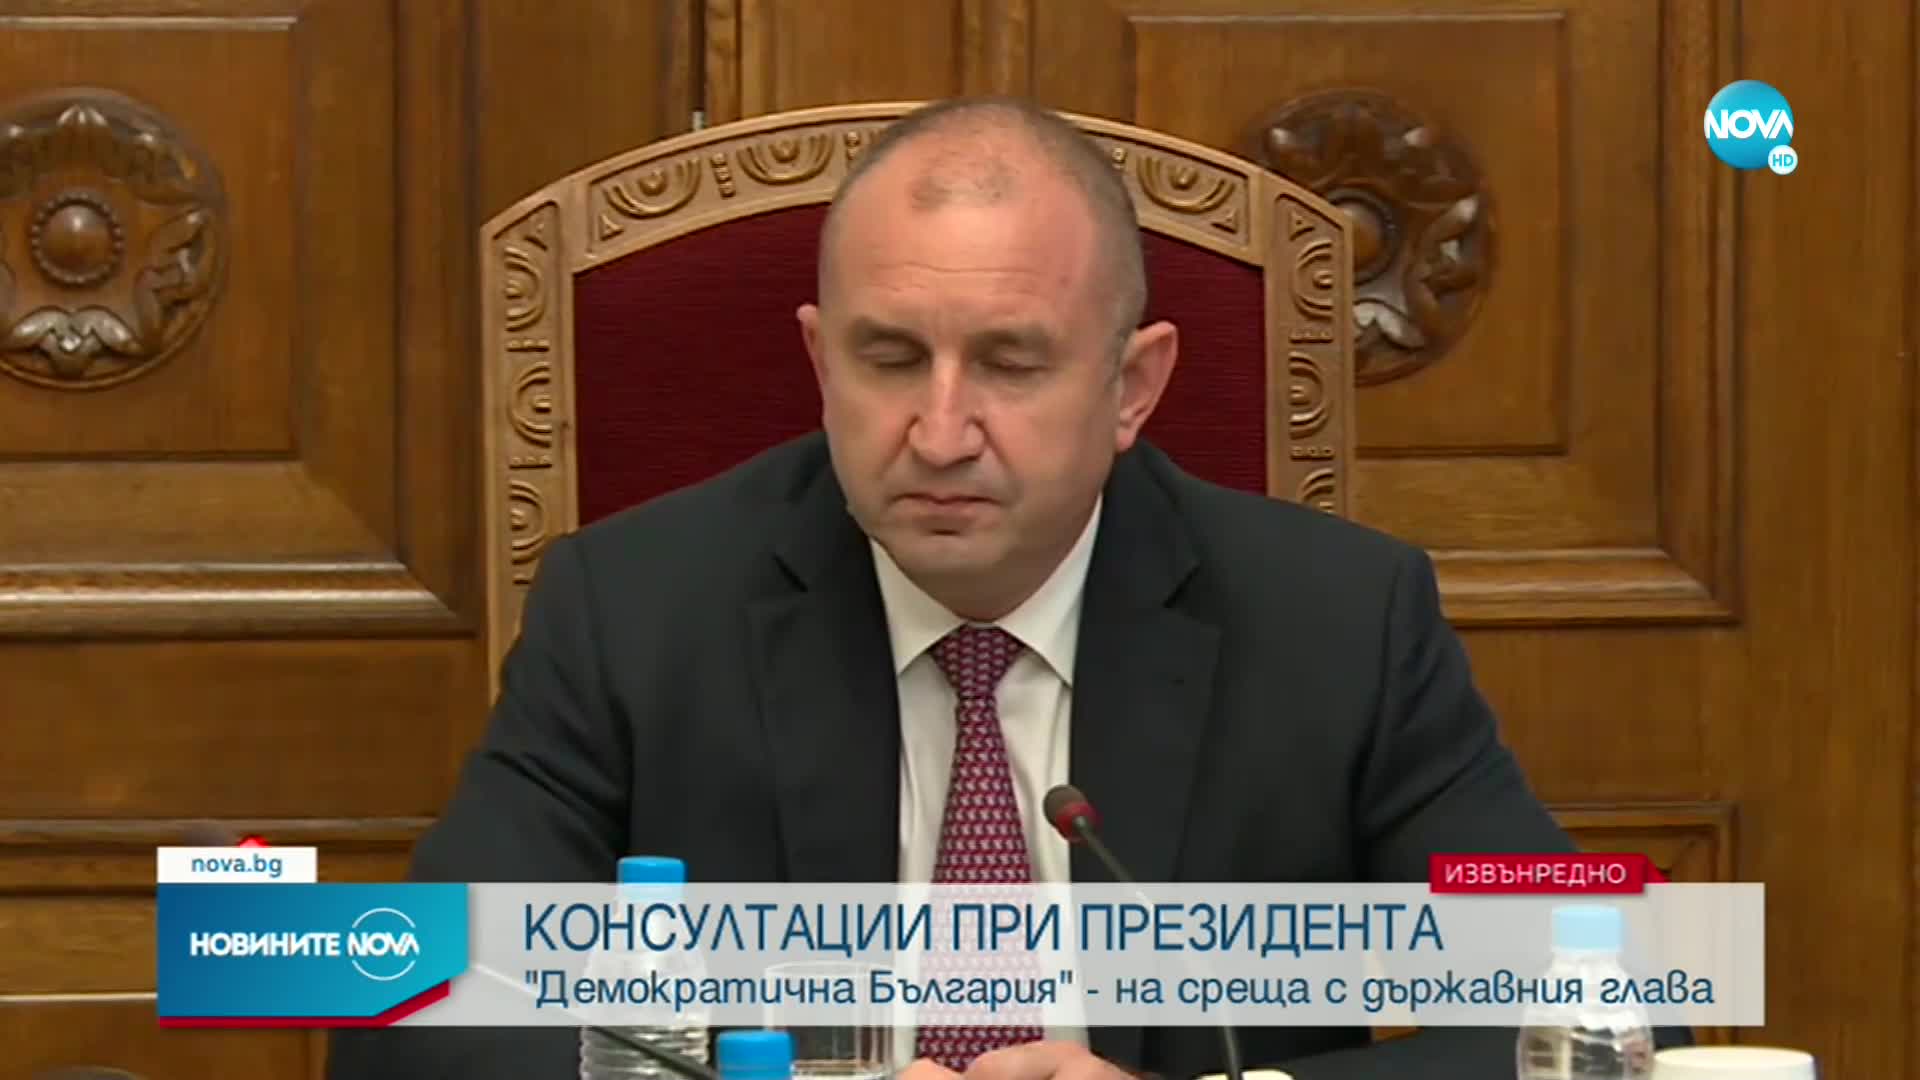 Христо Иванов: Парламентът има съдбовна отговорност да излъчи правителство